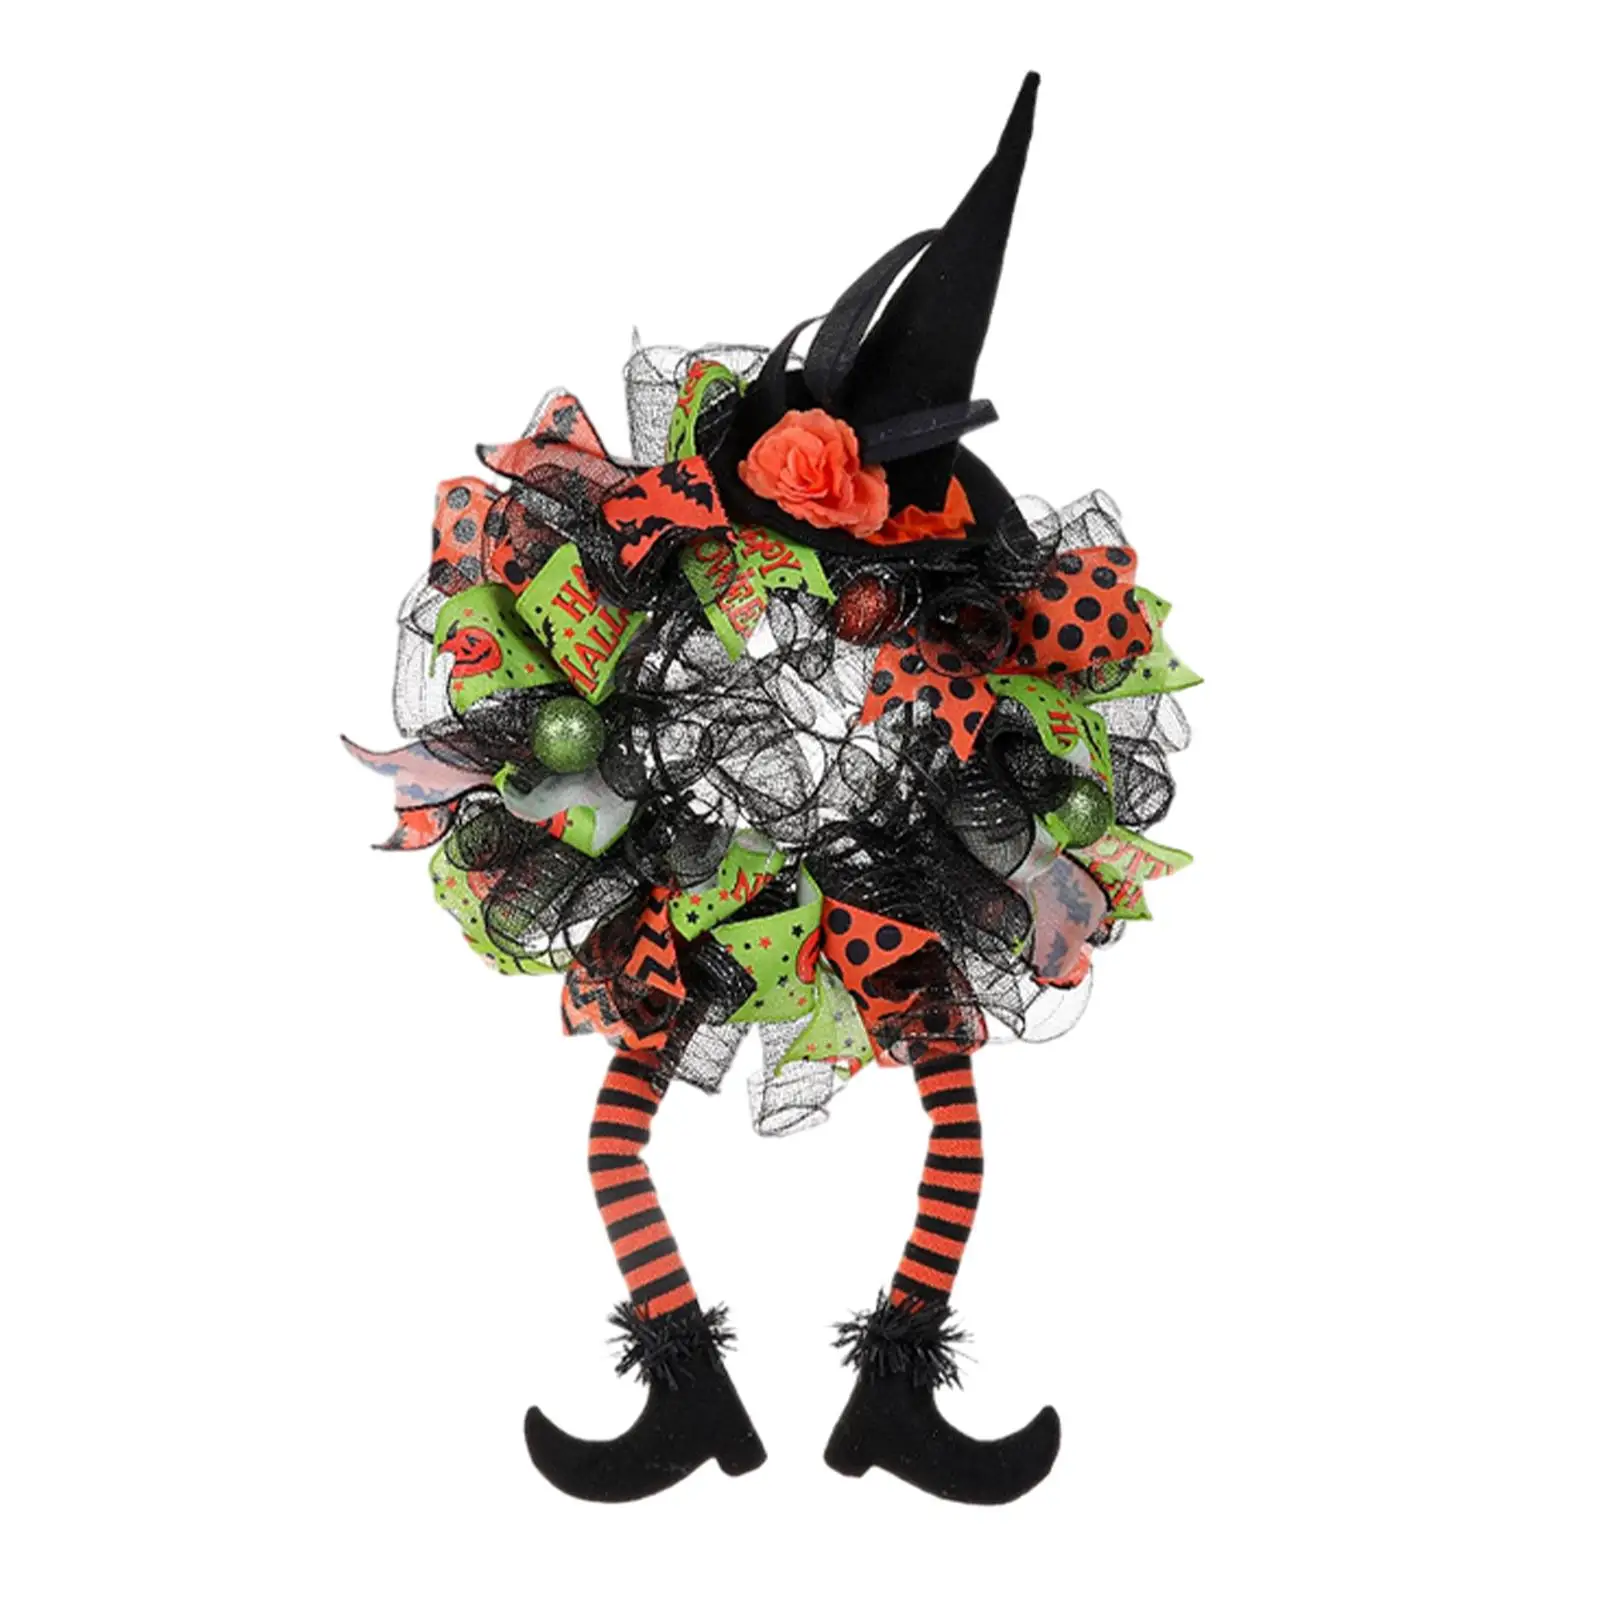 Garland Handmade 29.53x15.75 inch with Witch Hat and Legs Door Wreath Artificial Wreath for Window Festival Door Party Halloween